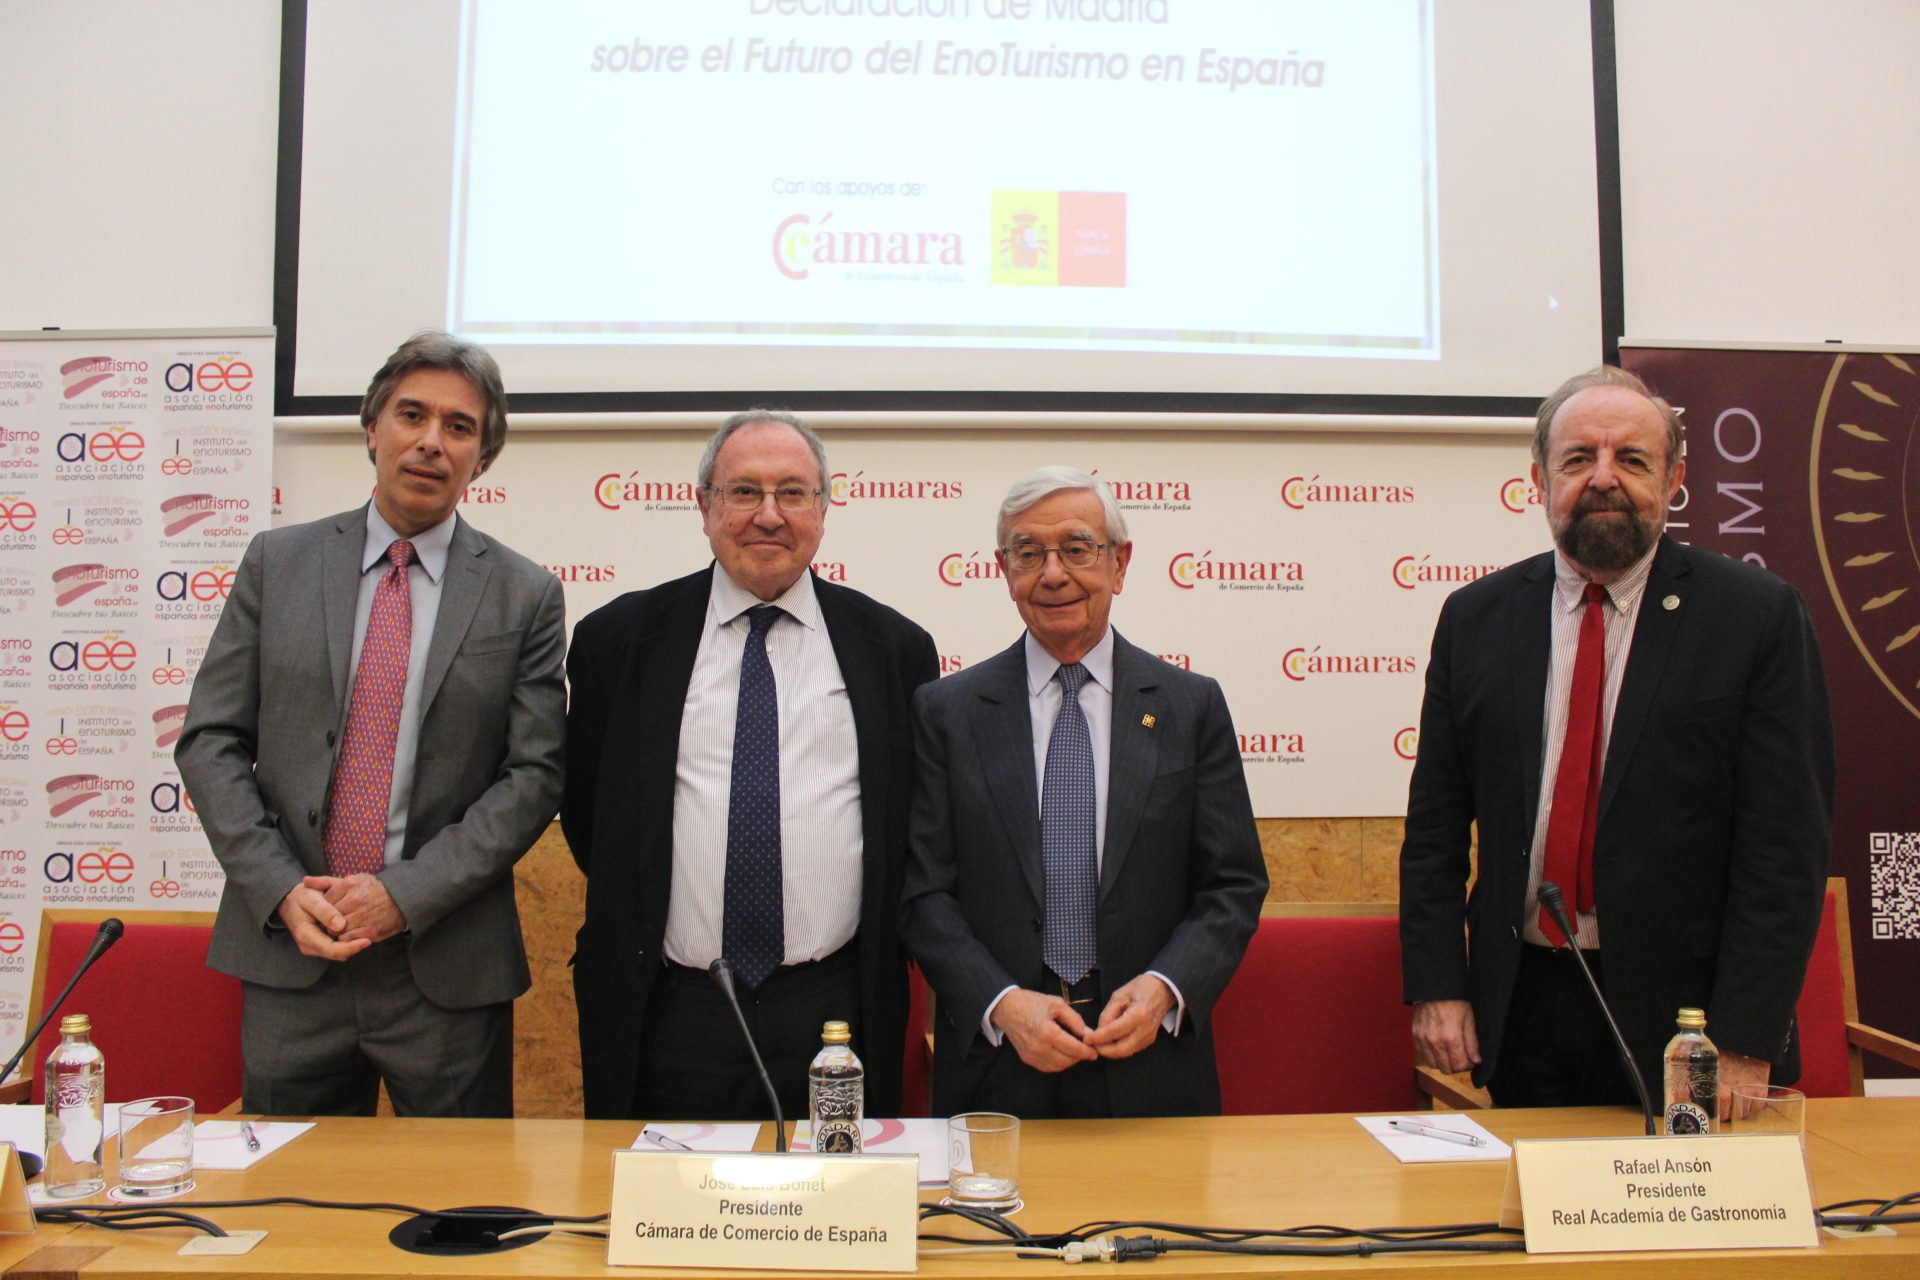 Foto de grupo en la presentación de “La Declaración de Madrid sobre el futuro del enoturismo en España”. Foto: Cedida por Cámara de Comercio de España